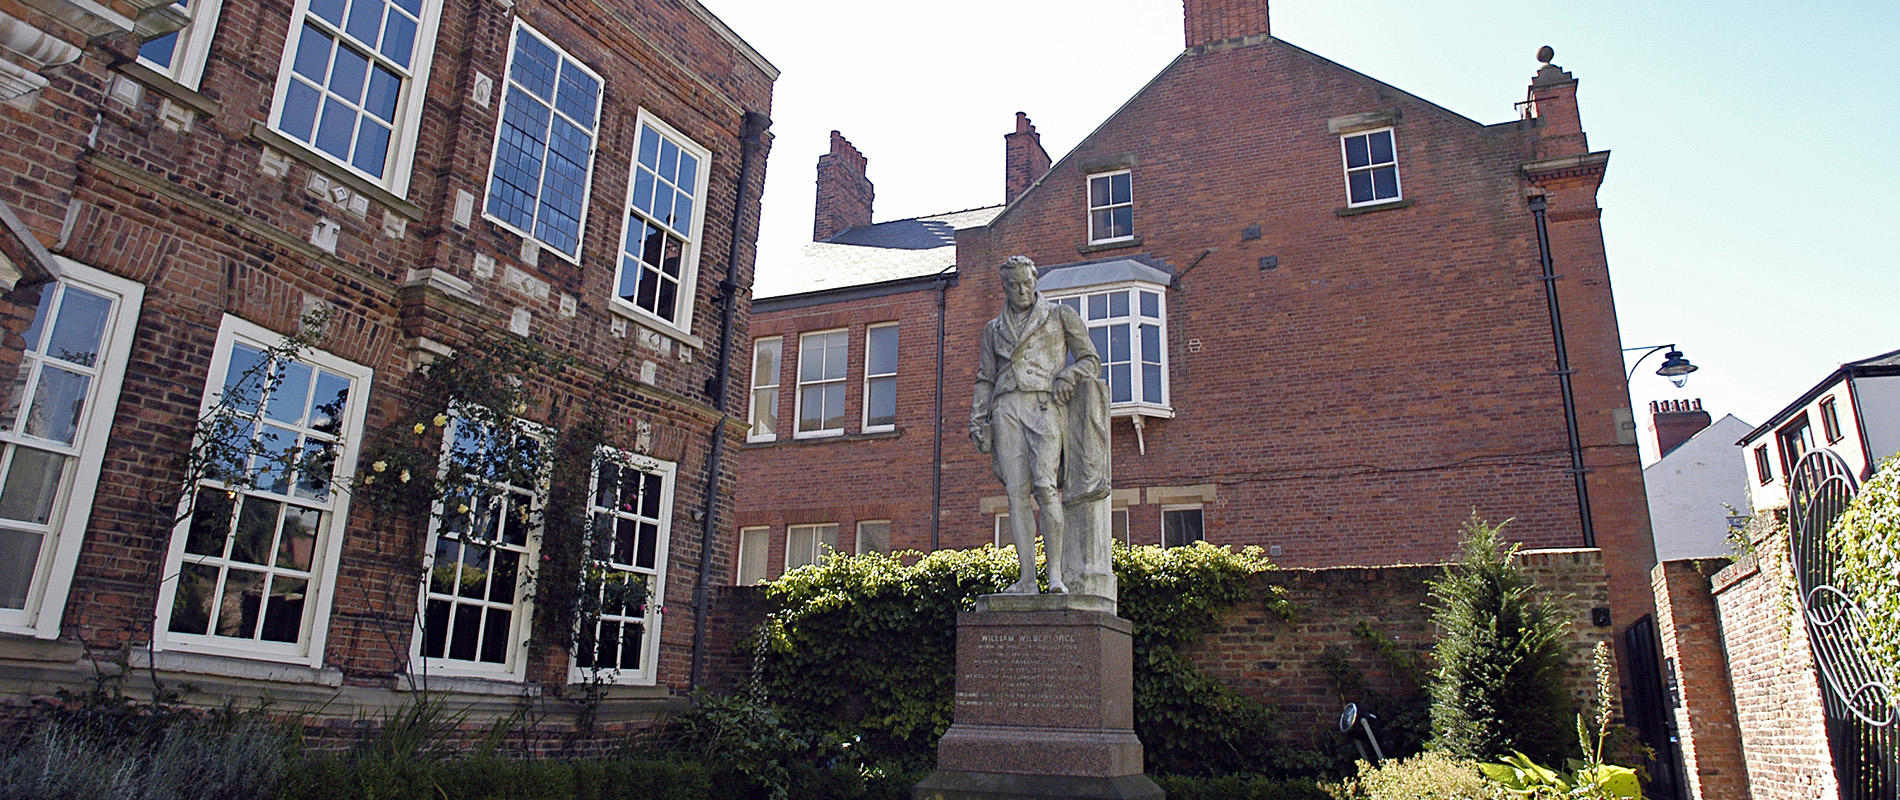 Wilberforce Institute garden